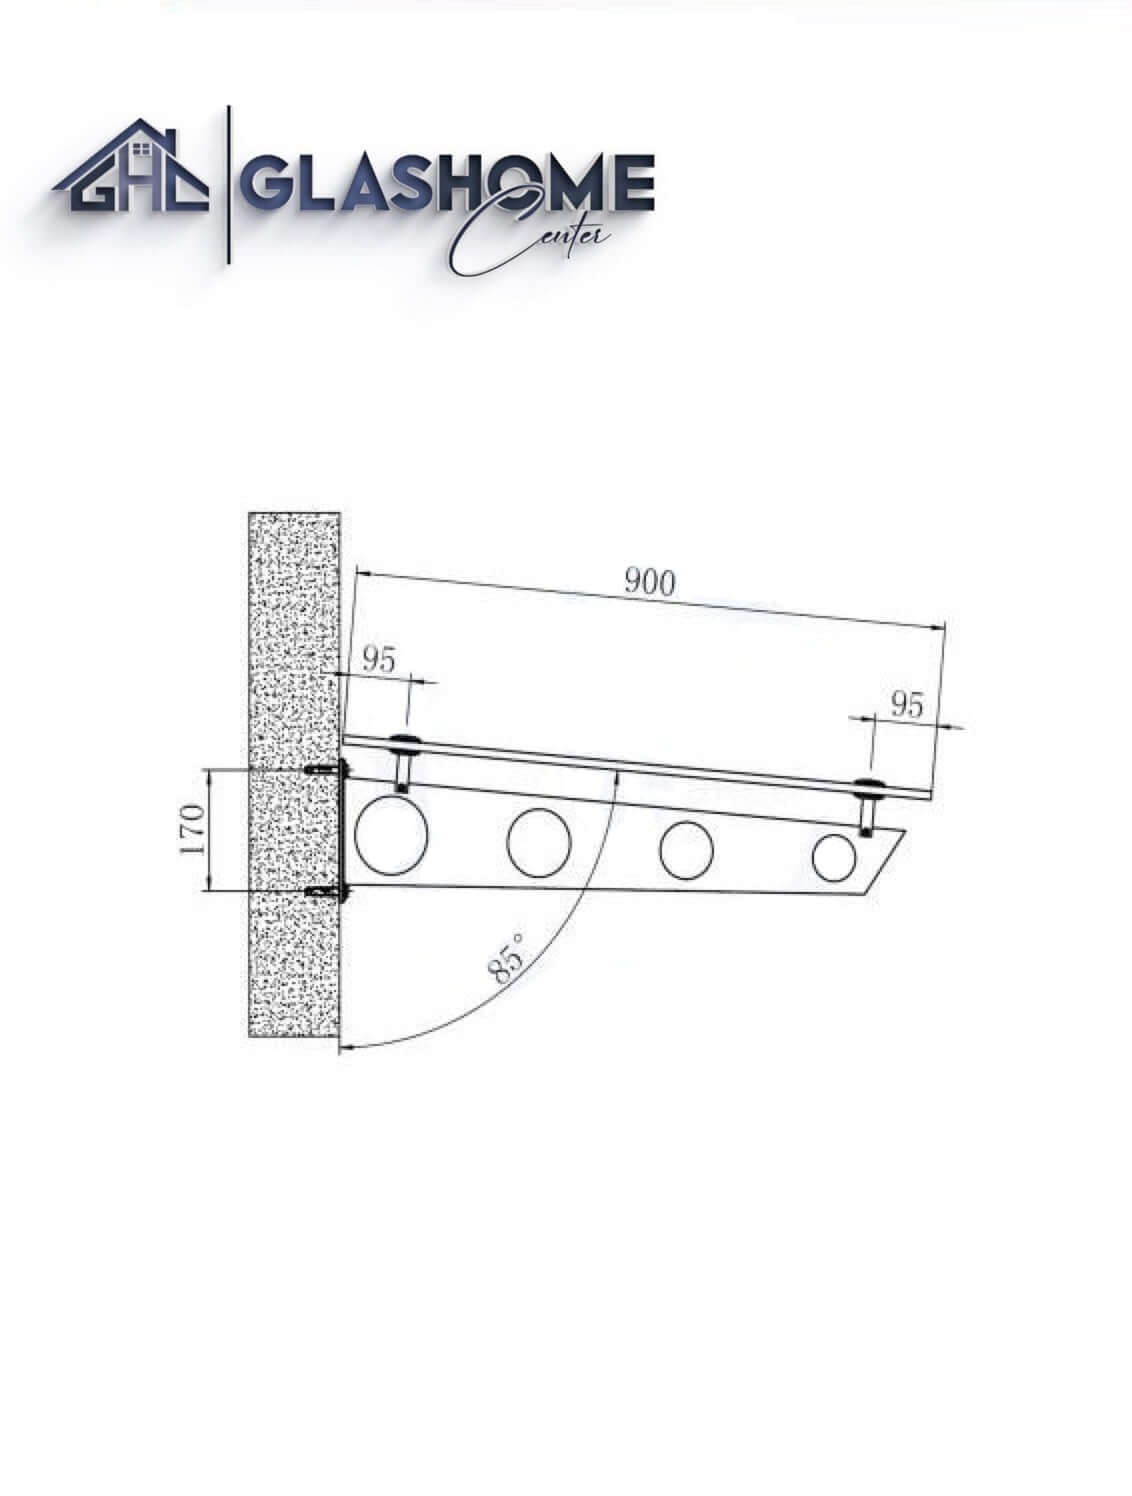 GlasHomeCenter - baldacchino in vetro - vetro trasparente - 160x90 cm - vetro di sicurezza stratificato 13,1 mm - incl.2 staffe in acciaio inossidabile nero variante "Stoccolma"